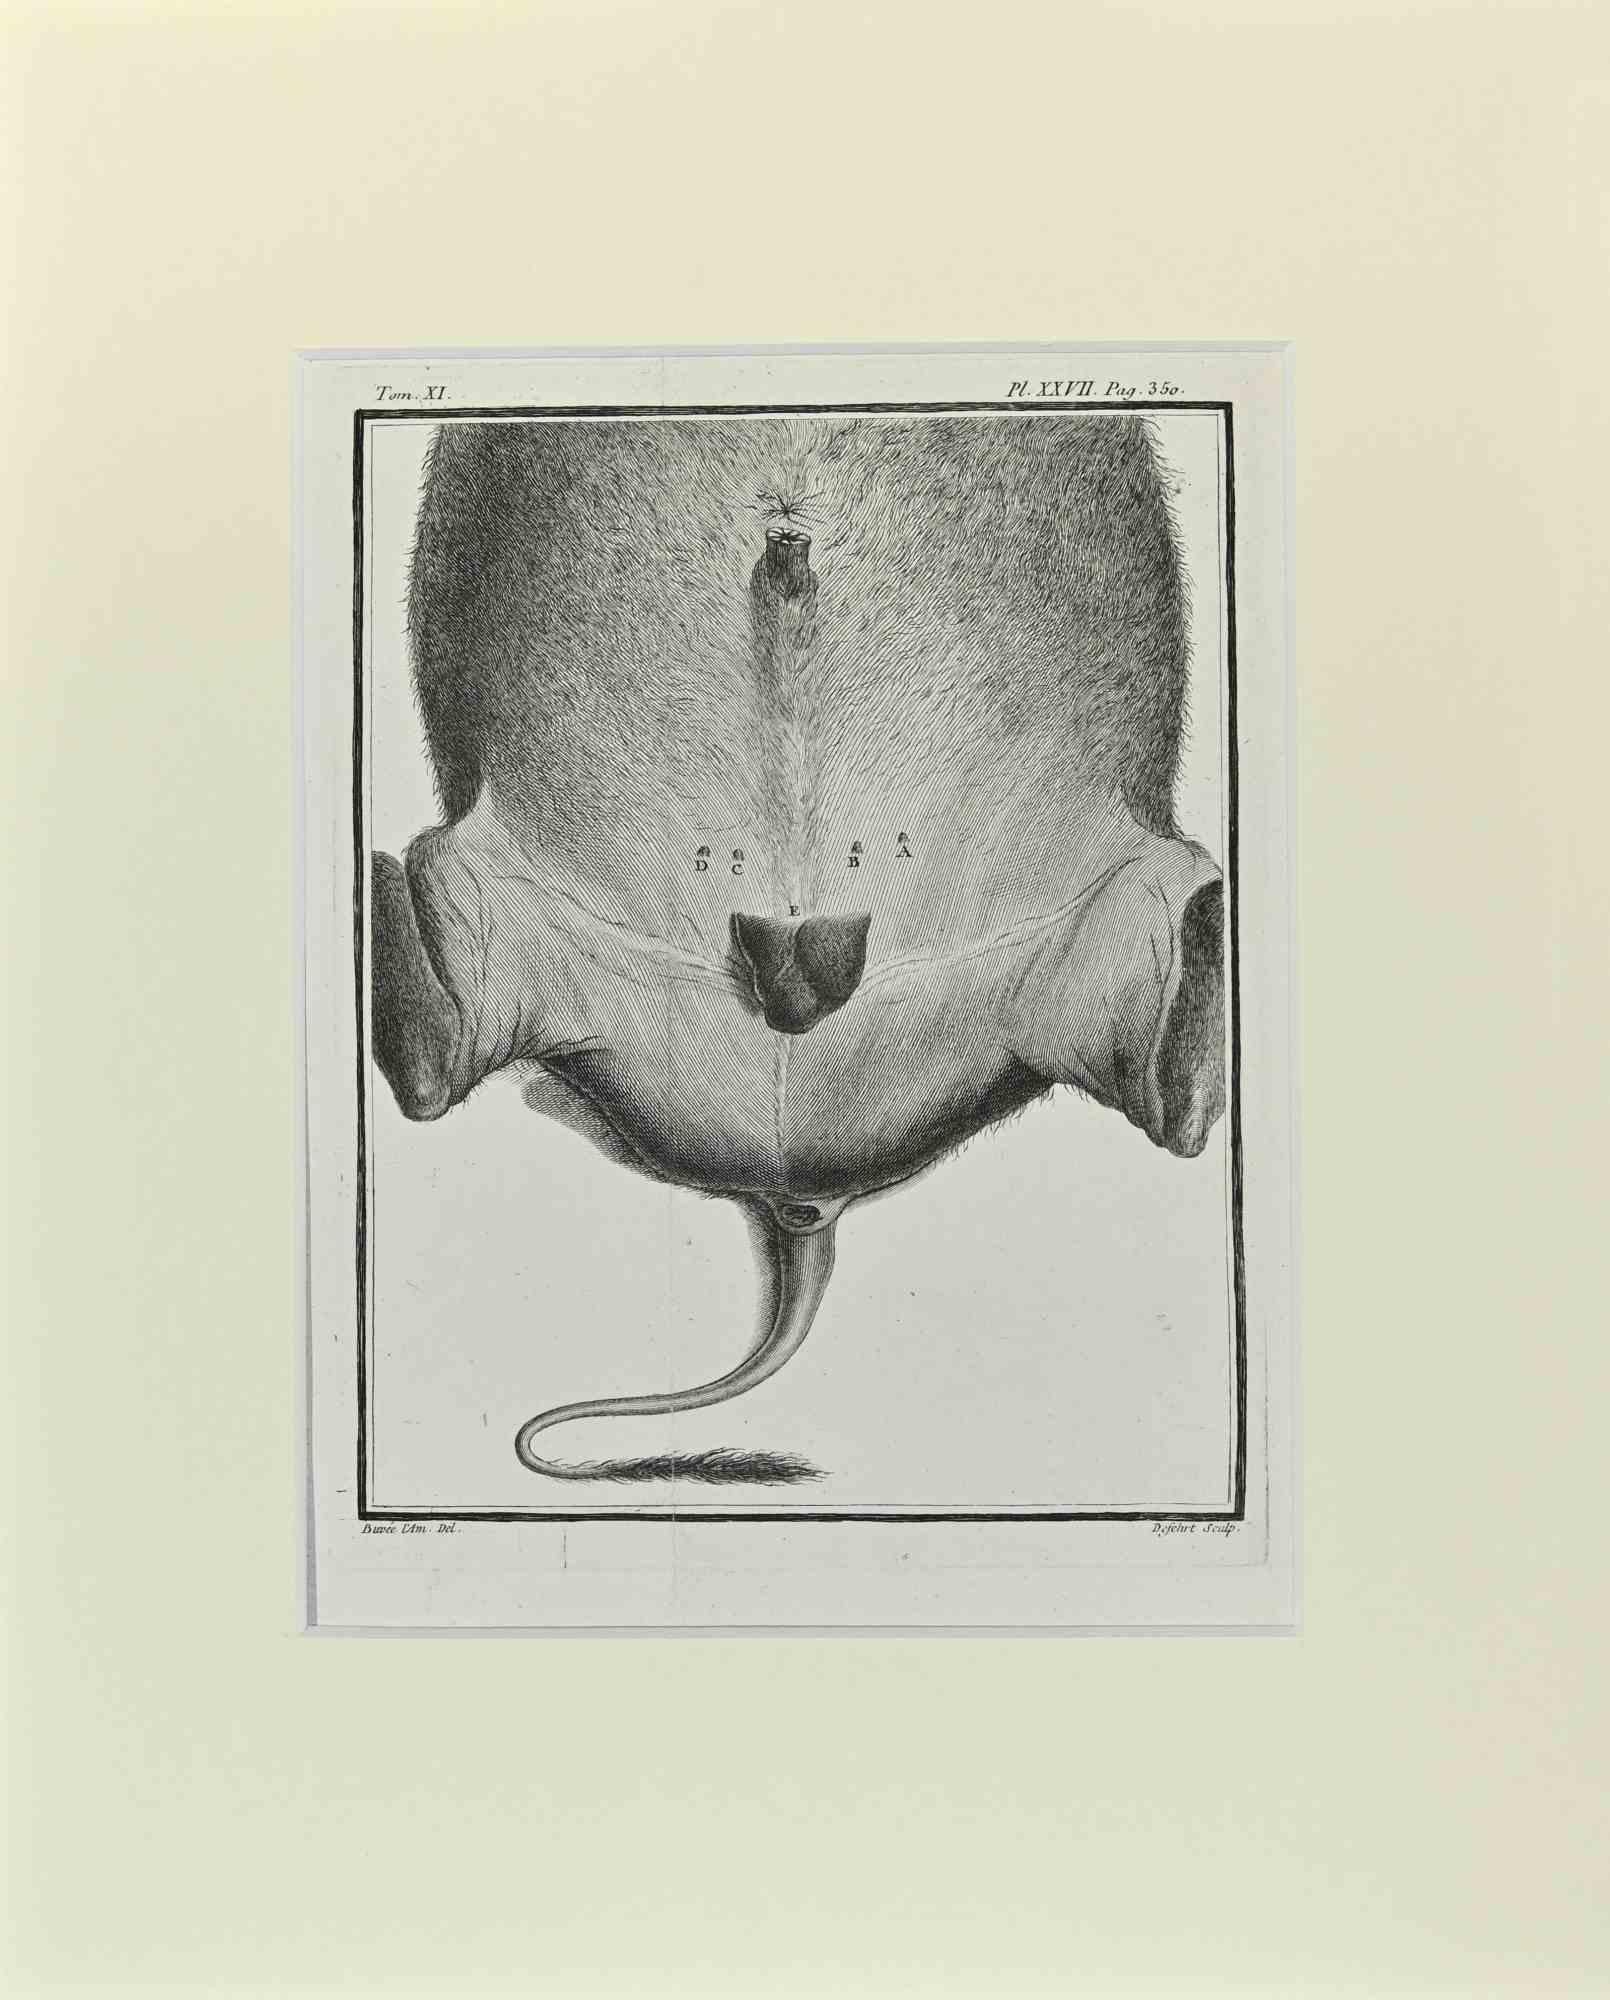 Buffalo Anatomy ist ein Kunstwerk von Buvée l'Américain aus dem Jahr 1771.  

Radierung B./W. Druck auf Elfenbeinpapier. Signiert auf der Platte am unteren linken Rand.

Das Werk ist auf Karton geklebt. Abmessungen insgesamt: 35x28 cm.

Das